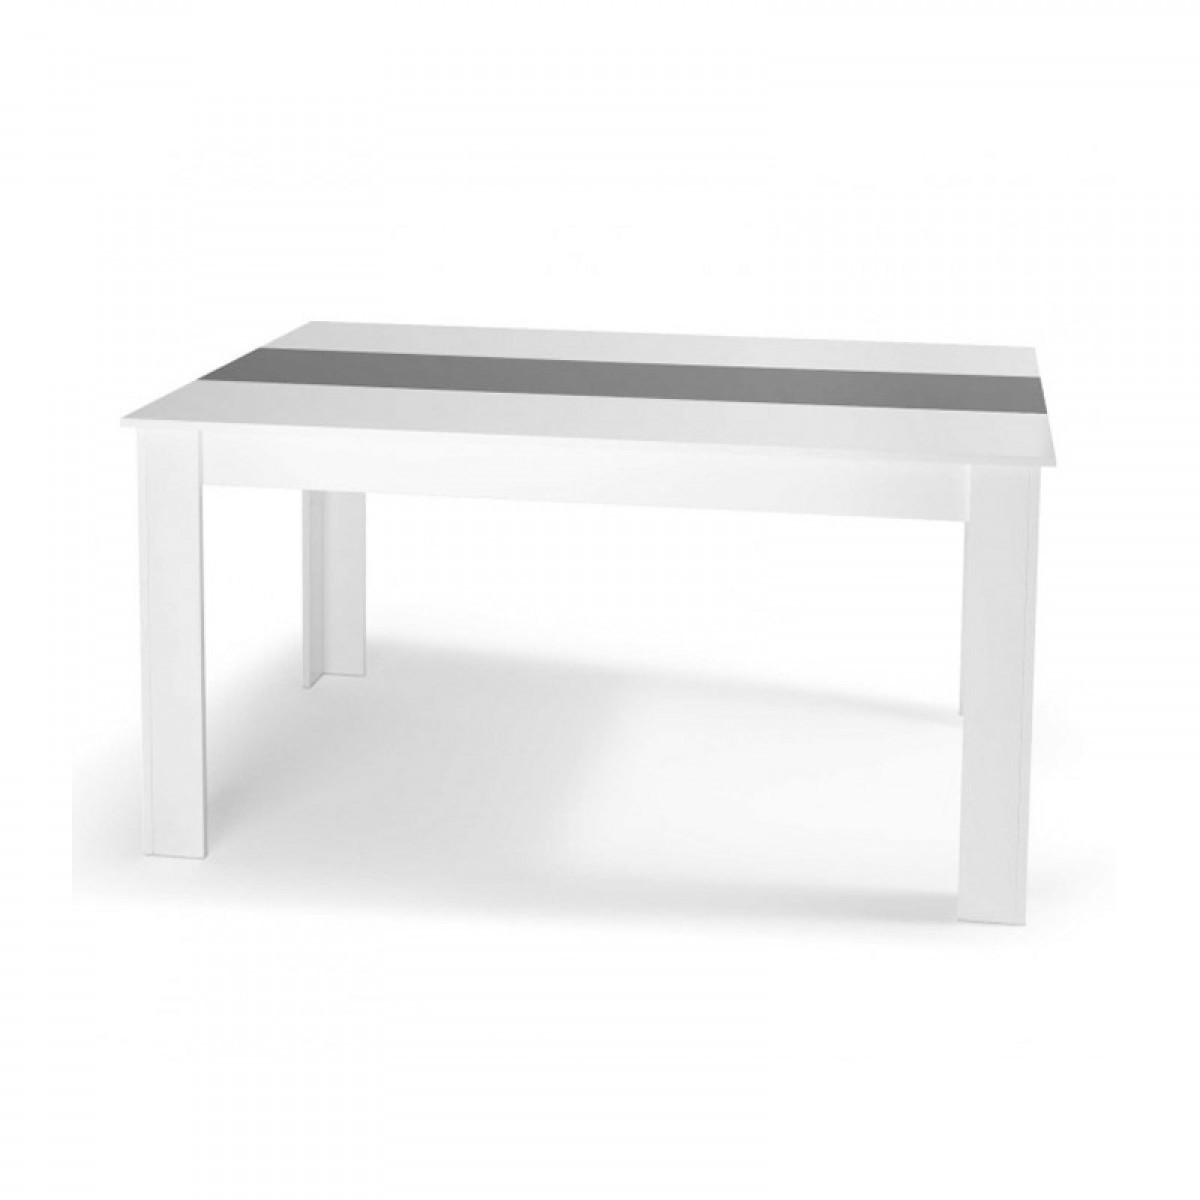 Ξύλινο Τραπέζι 160 X 90 X 75 Cm Χρώματος Λευκό Gloria Idomya 30080246